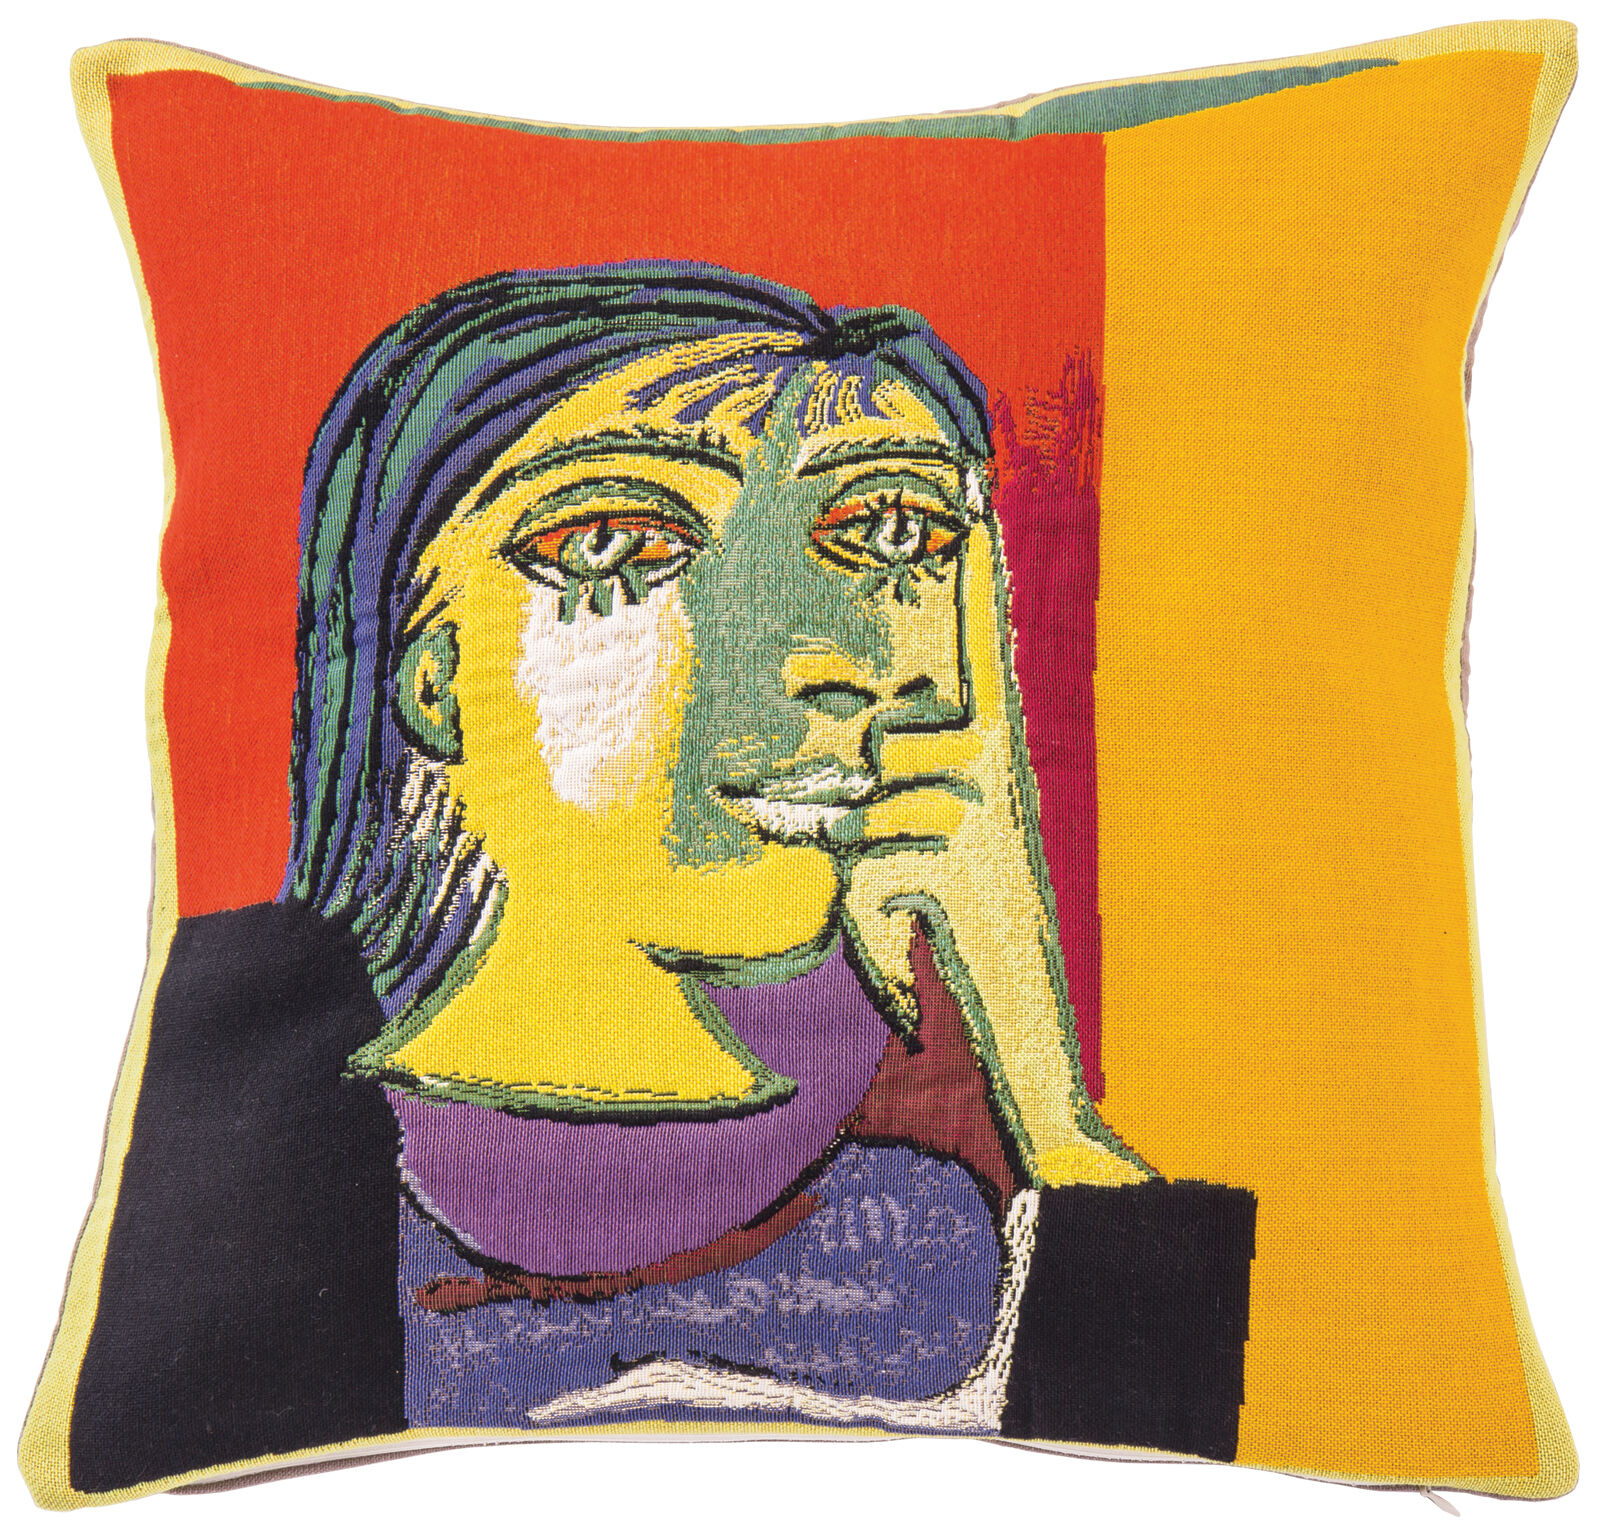 Kissenhülle "Dora Maar" von Pablo Picasso